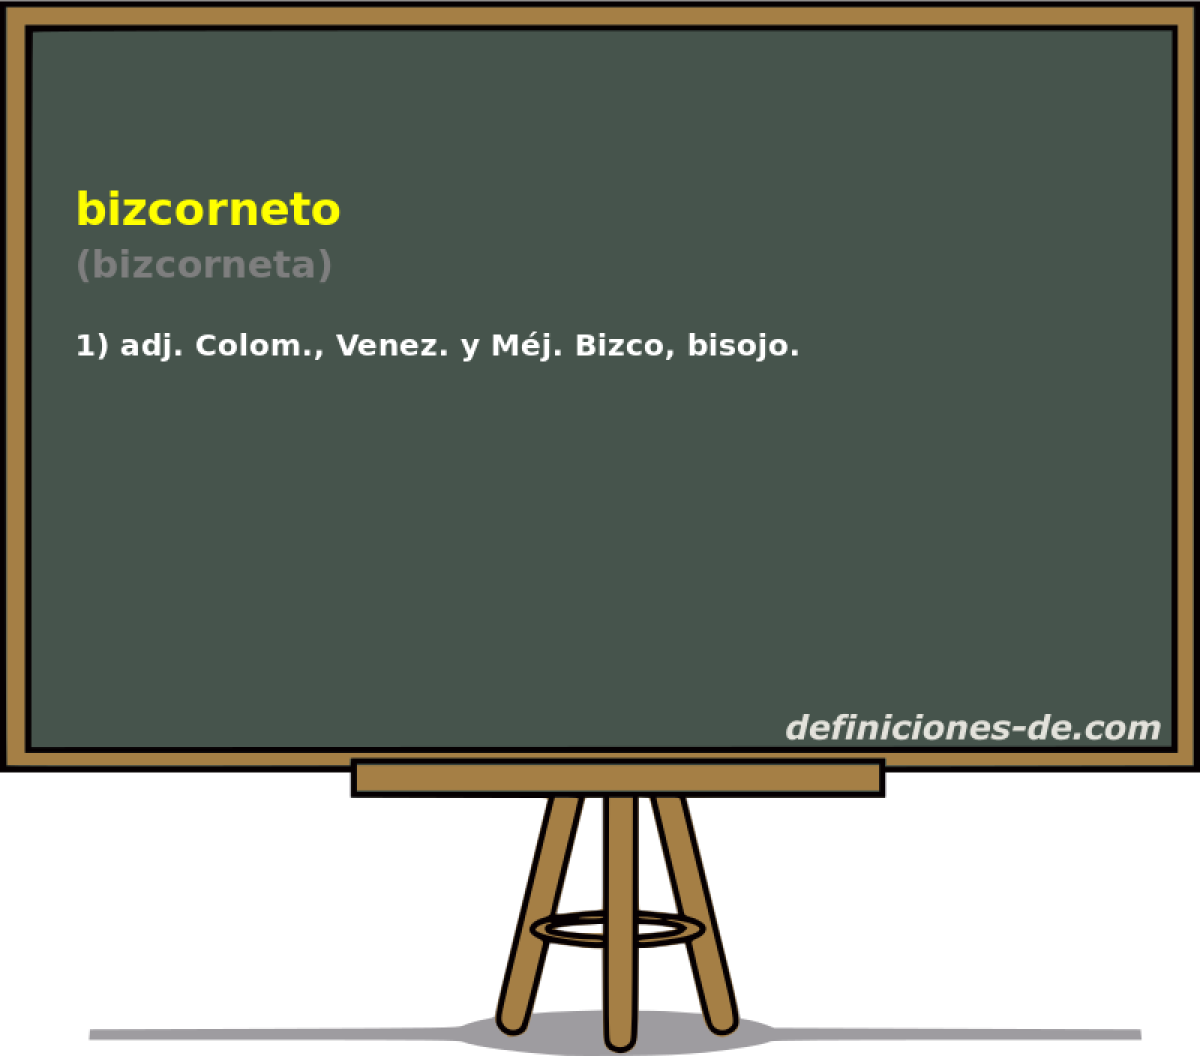 bizcorneto (bizcorneta)